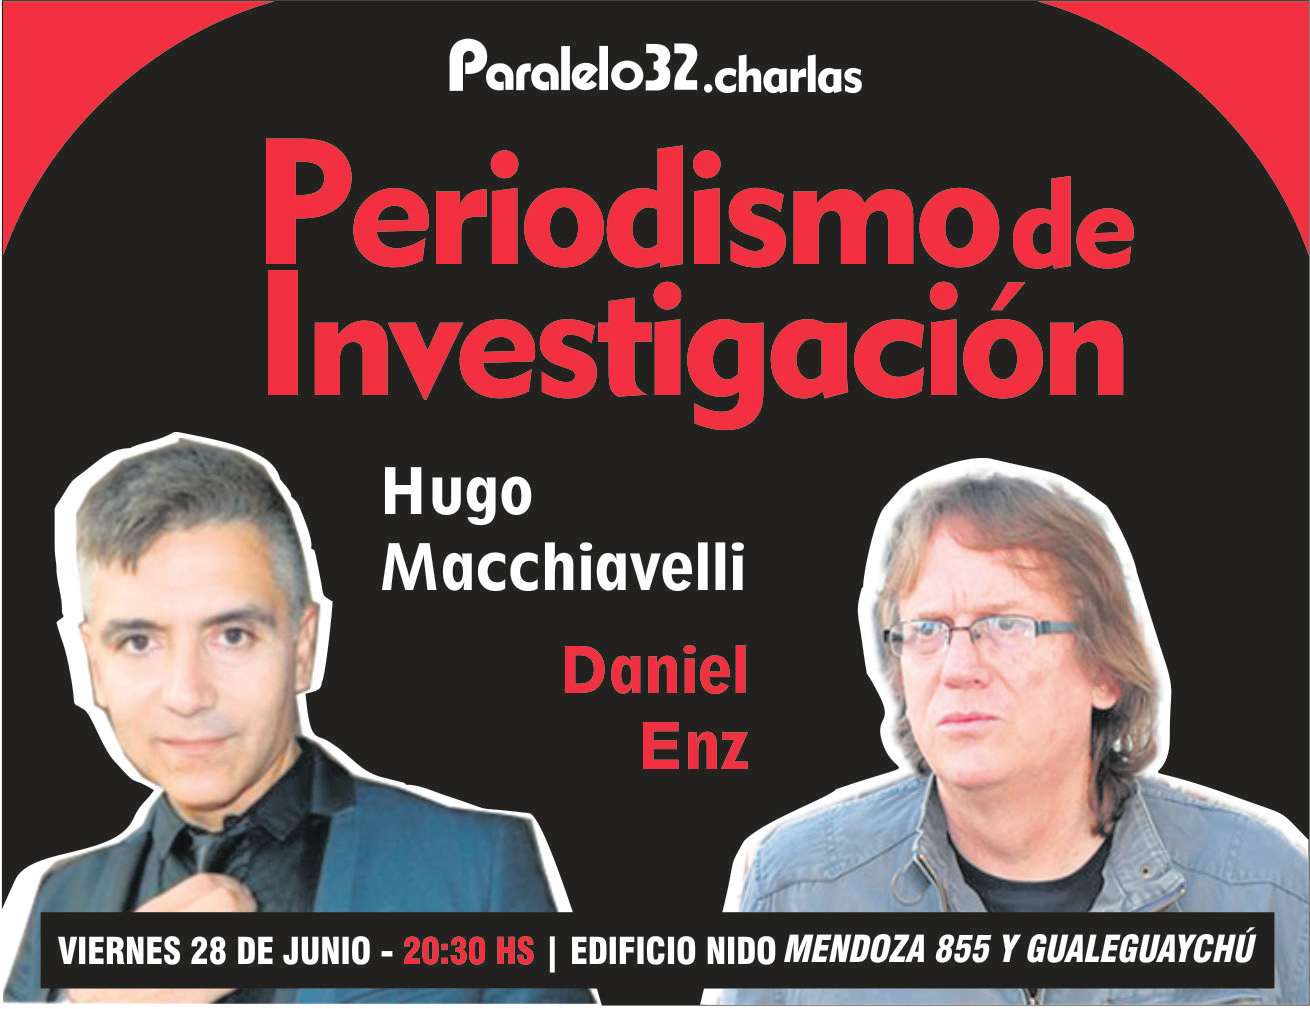 Este viernes 28 de junio se realizará la disertación sobre Periodismo de Investigación con Hugo Macchiavelli y Daniel Enz